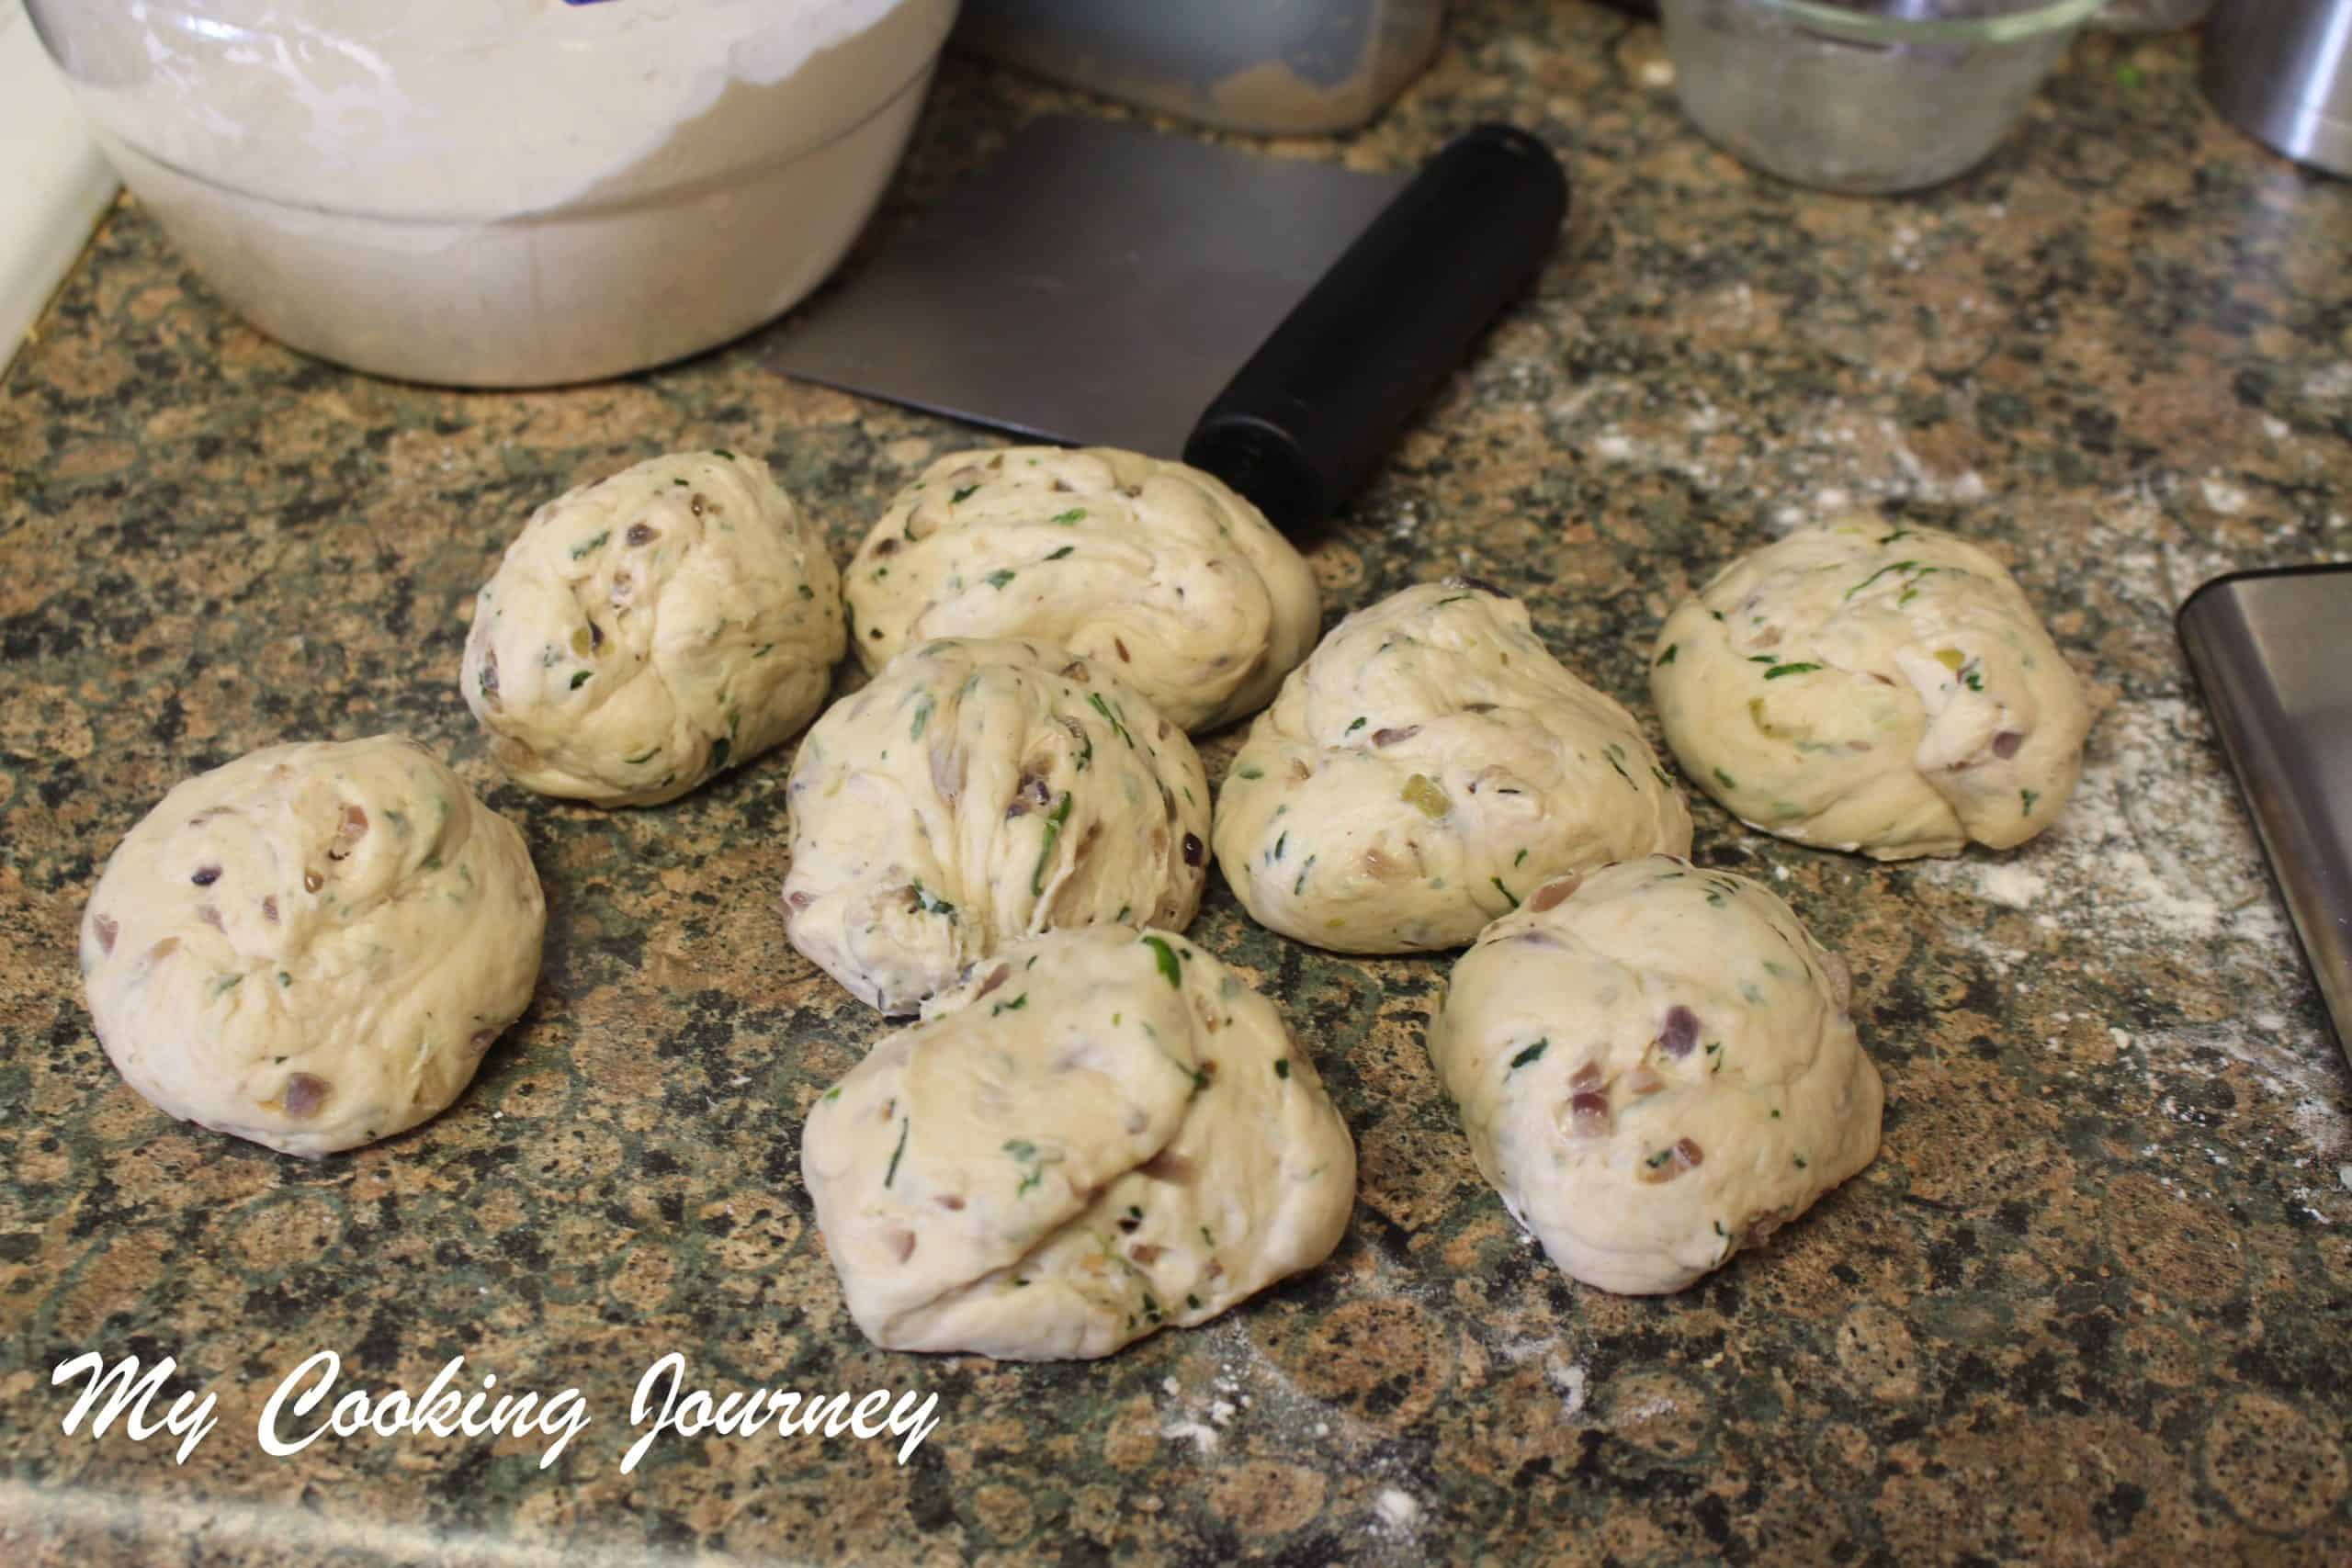 Dividing the dough into balls